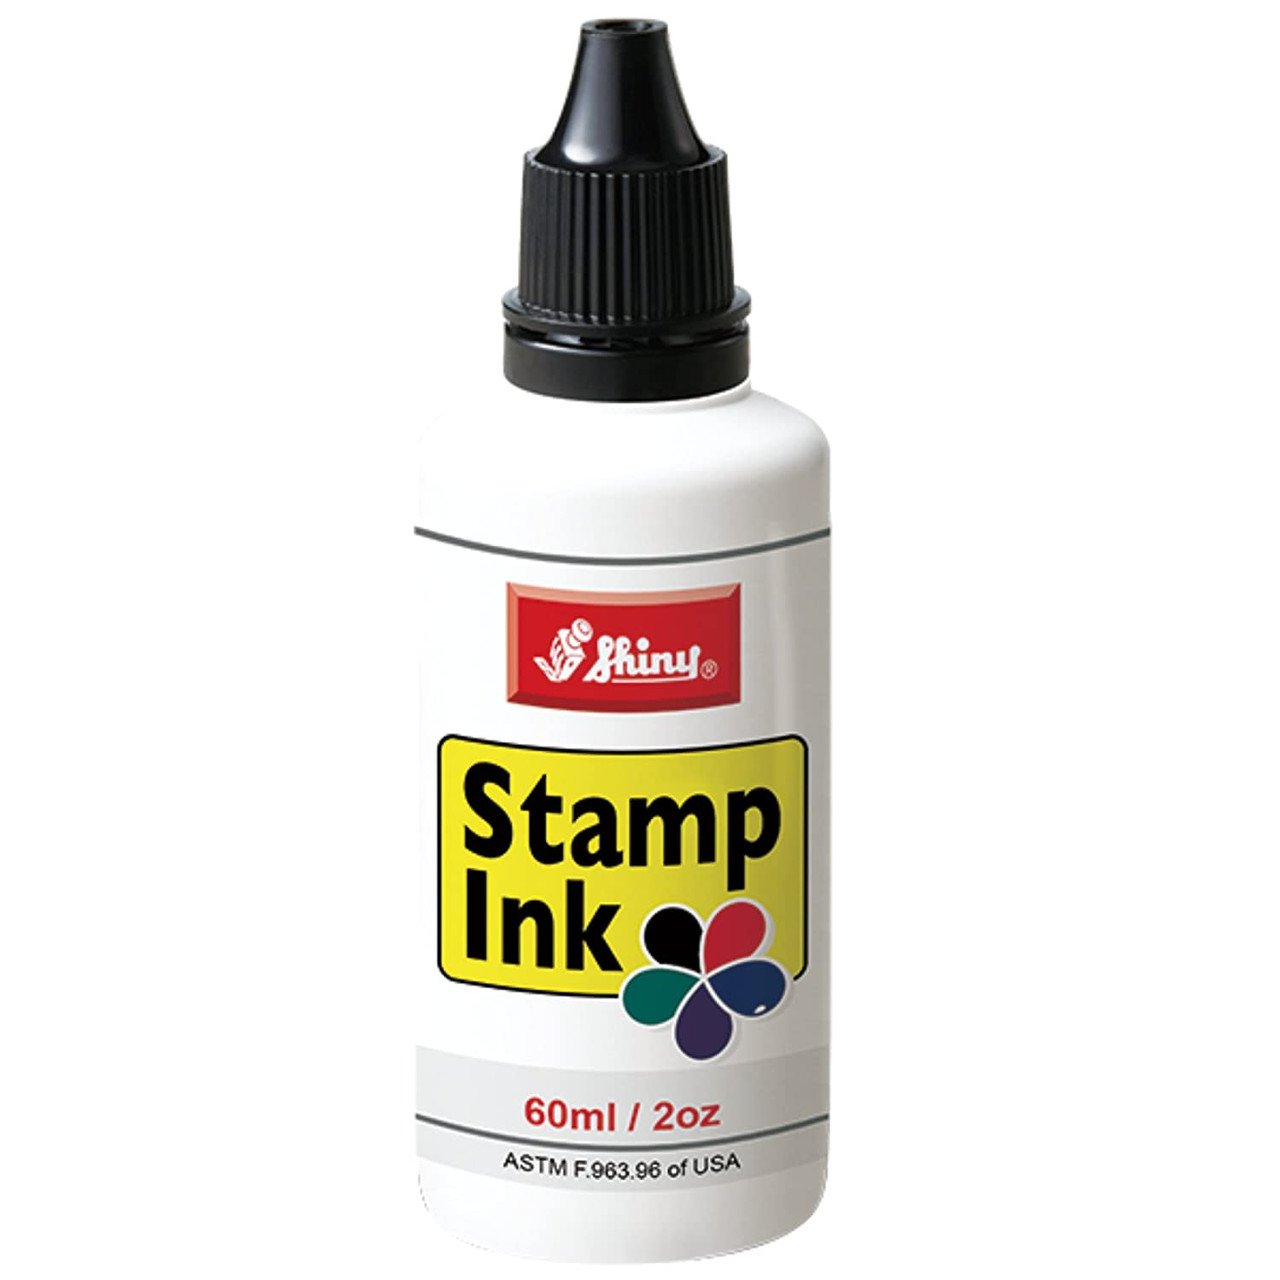 Shiny Stamp Ink Refills I 28ml